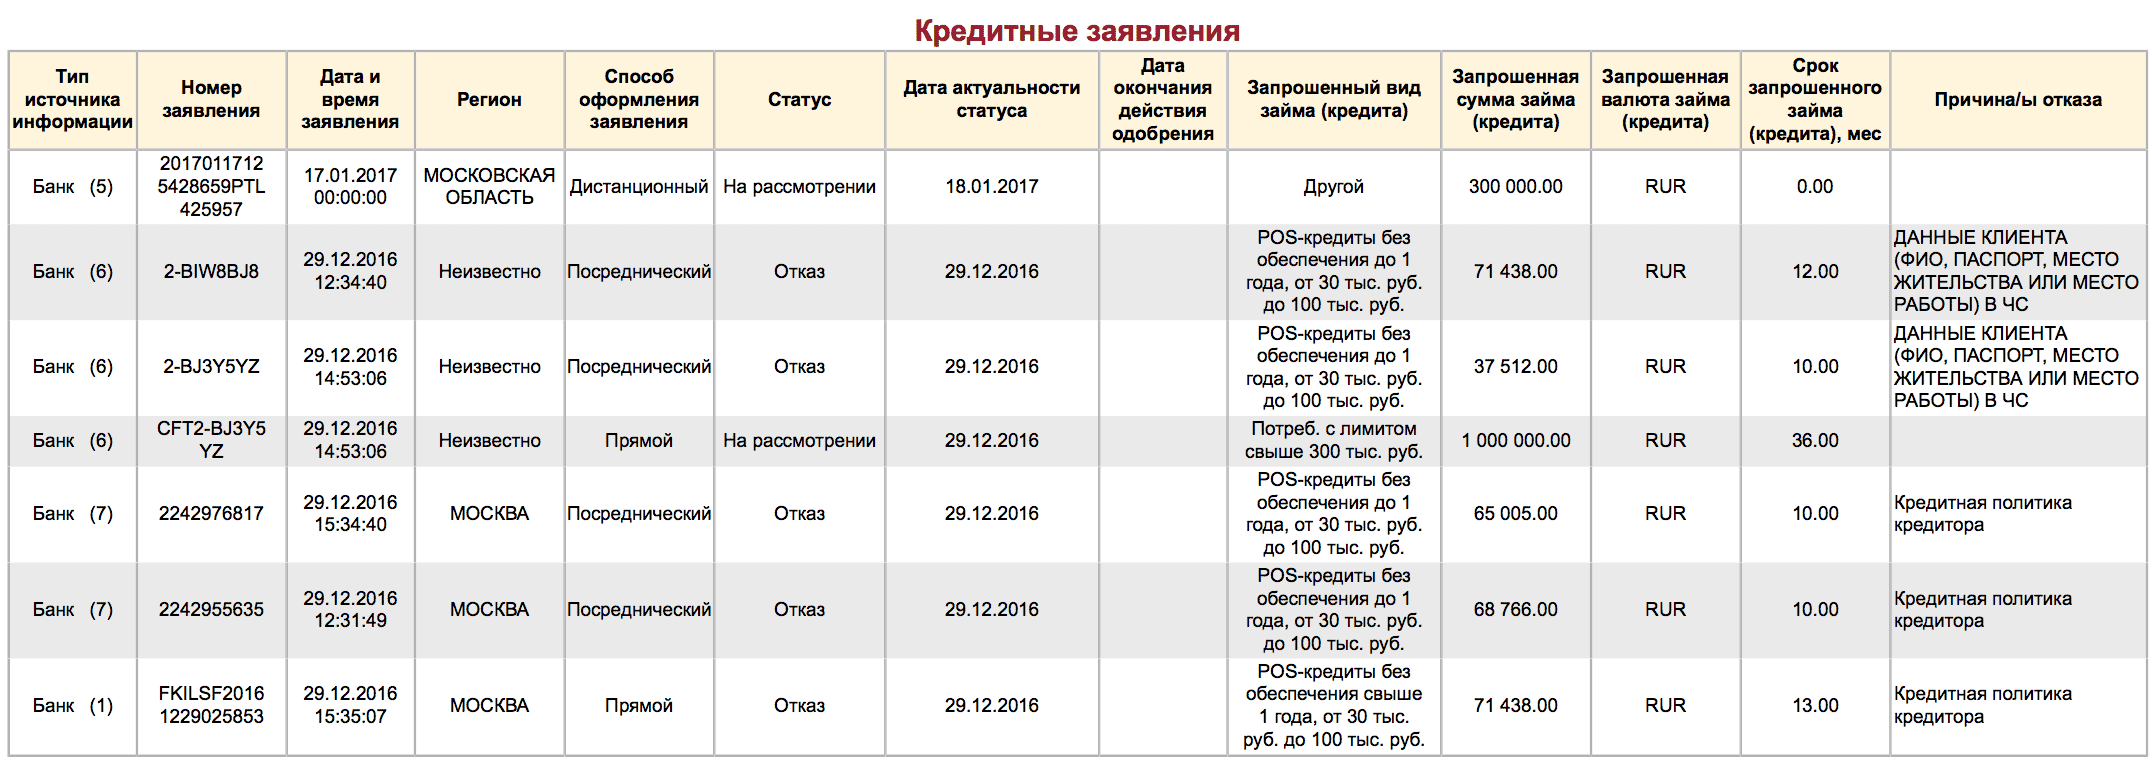 Якби всі ці заяви схвалили, я був би винен банкам в цілому 1 812 853 рубля разом з схваленими кредитами: